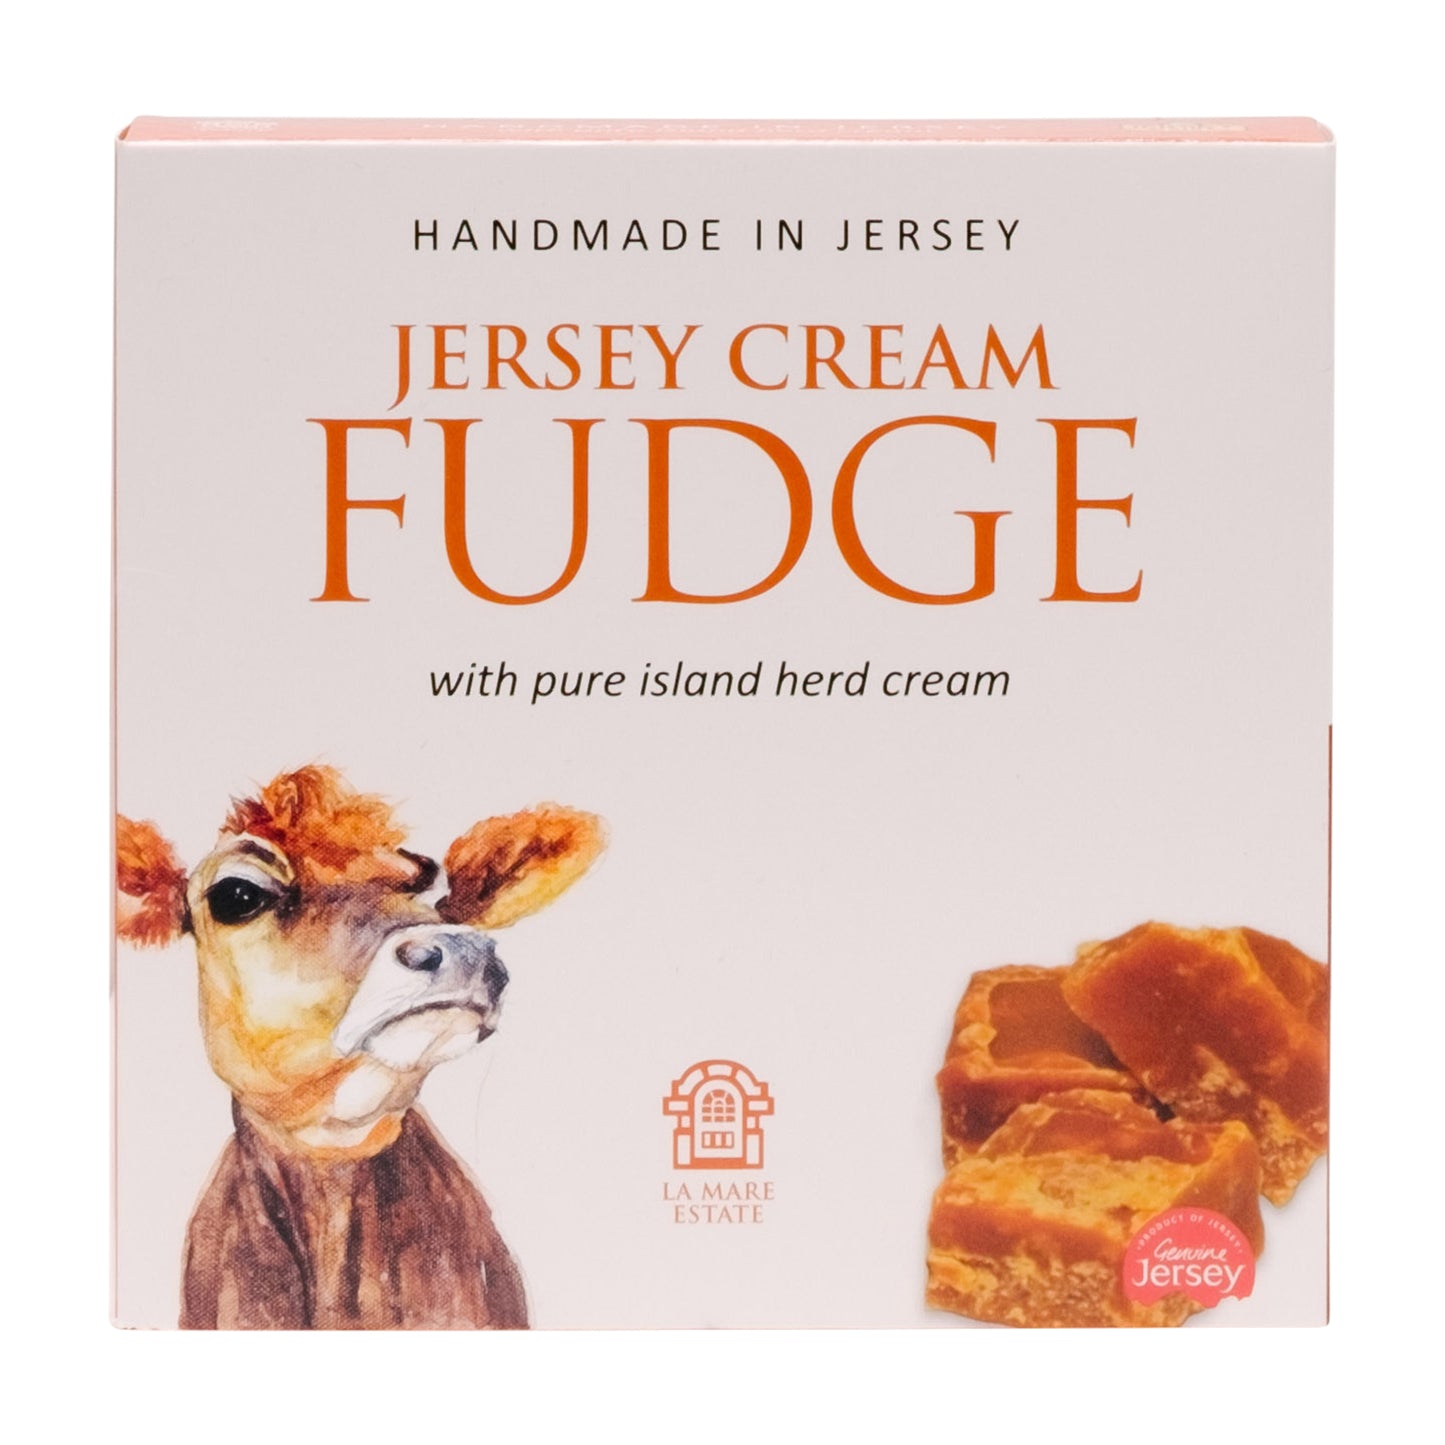 Jersey Cream Butter Fudge – Maison de Jersey